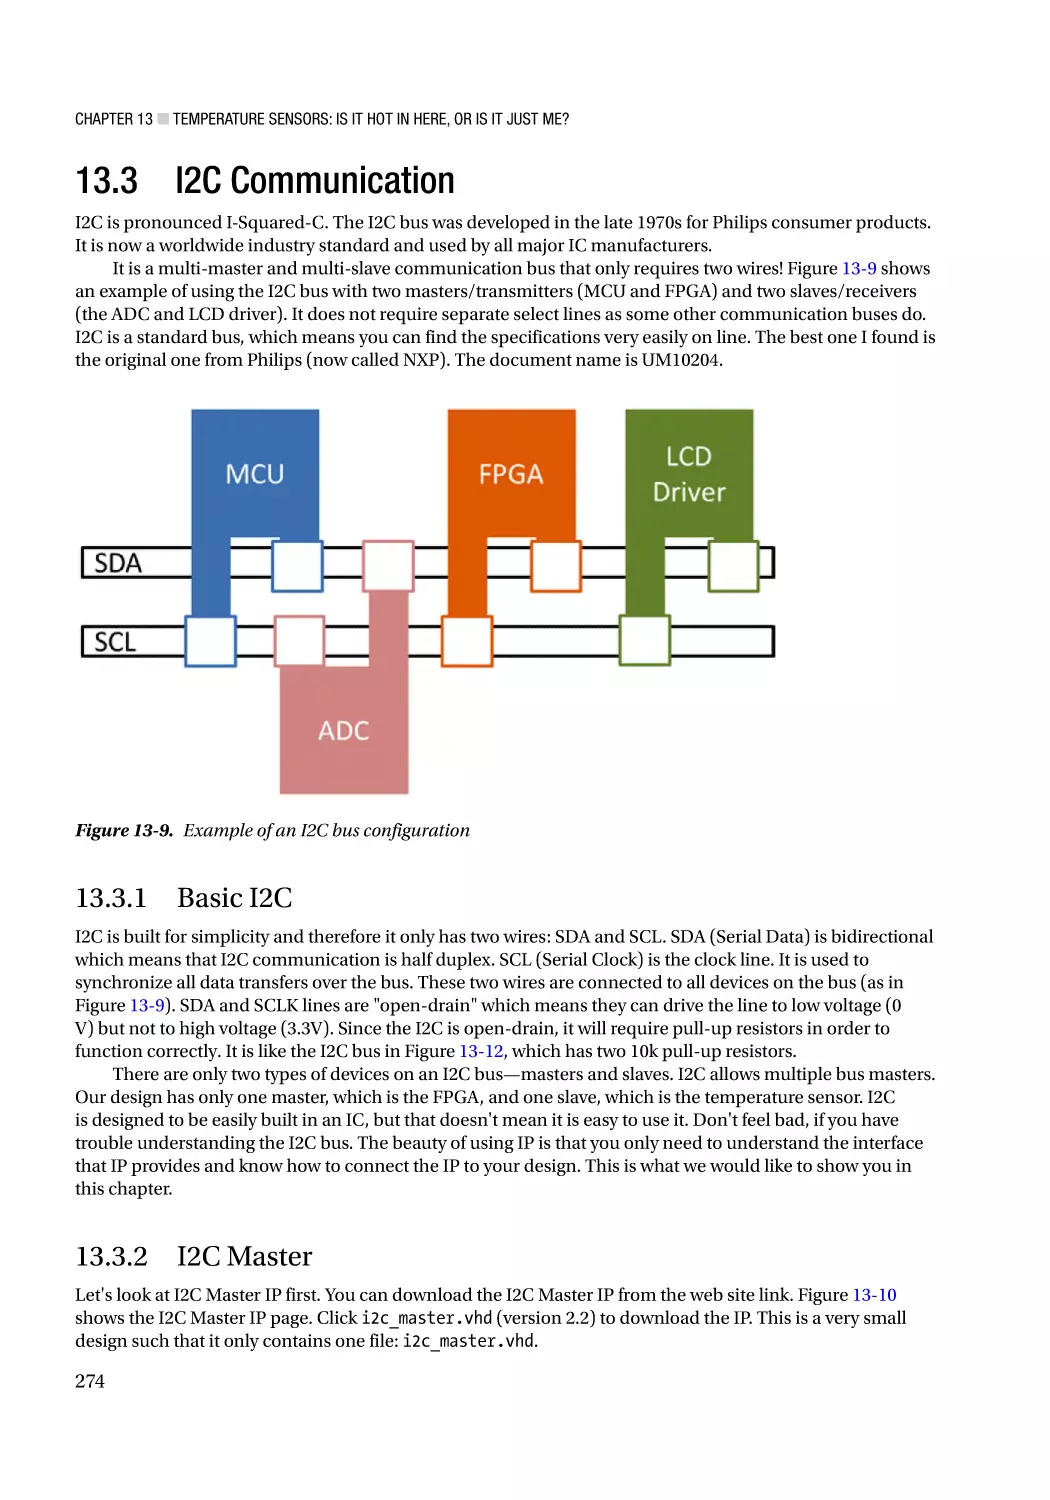 13.3 I2C Communication
13.3.1 Basic I2C
13.3.2 I2C Master